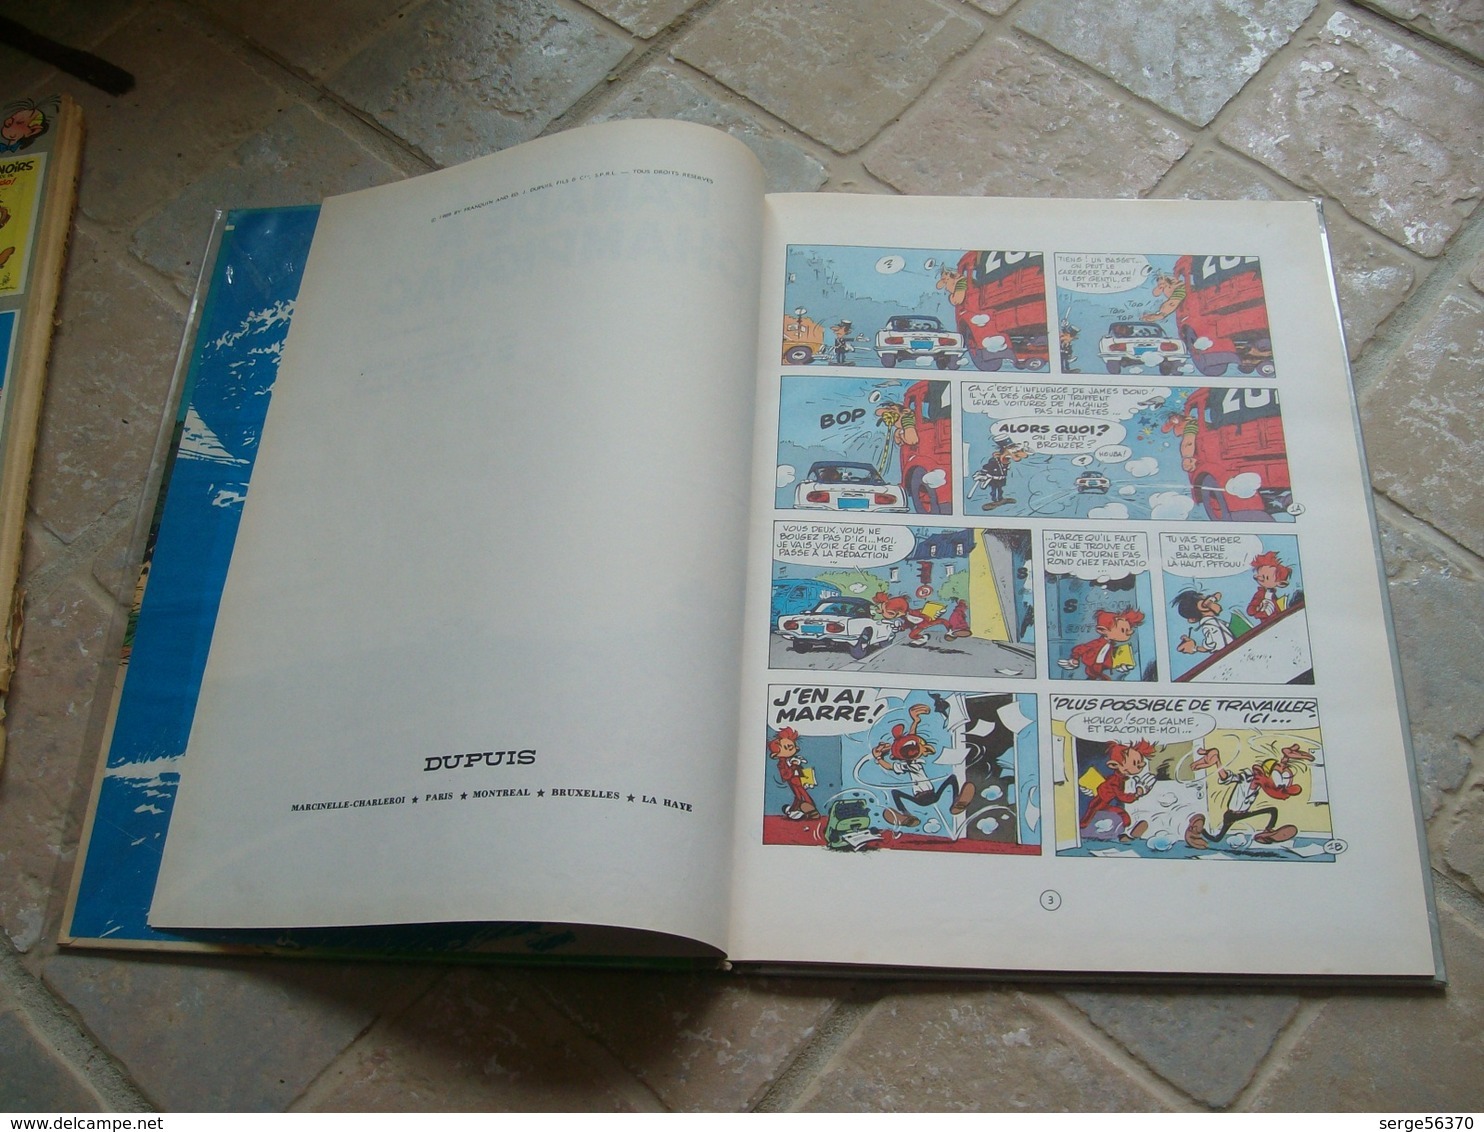 Spirou et Fantasio 19 Panade à Champignac FRANQUIN Marsupilami édition de 1969 titre en bleu EO éo première originale